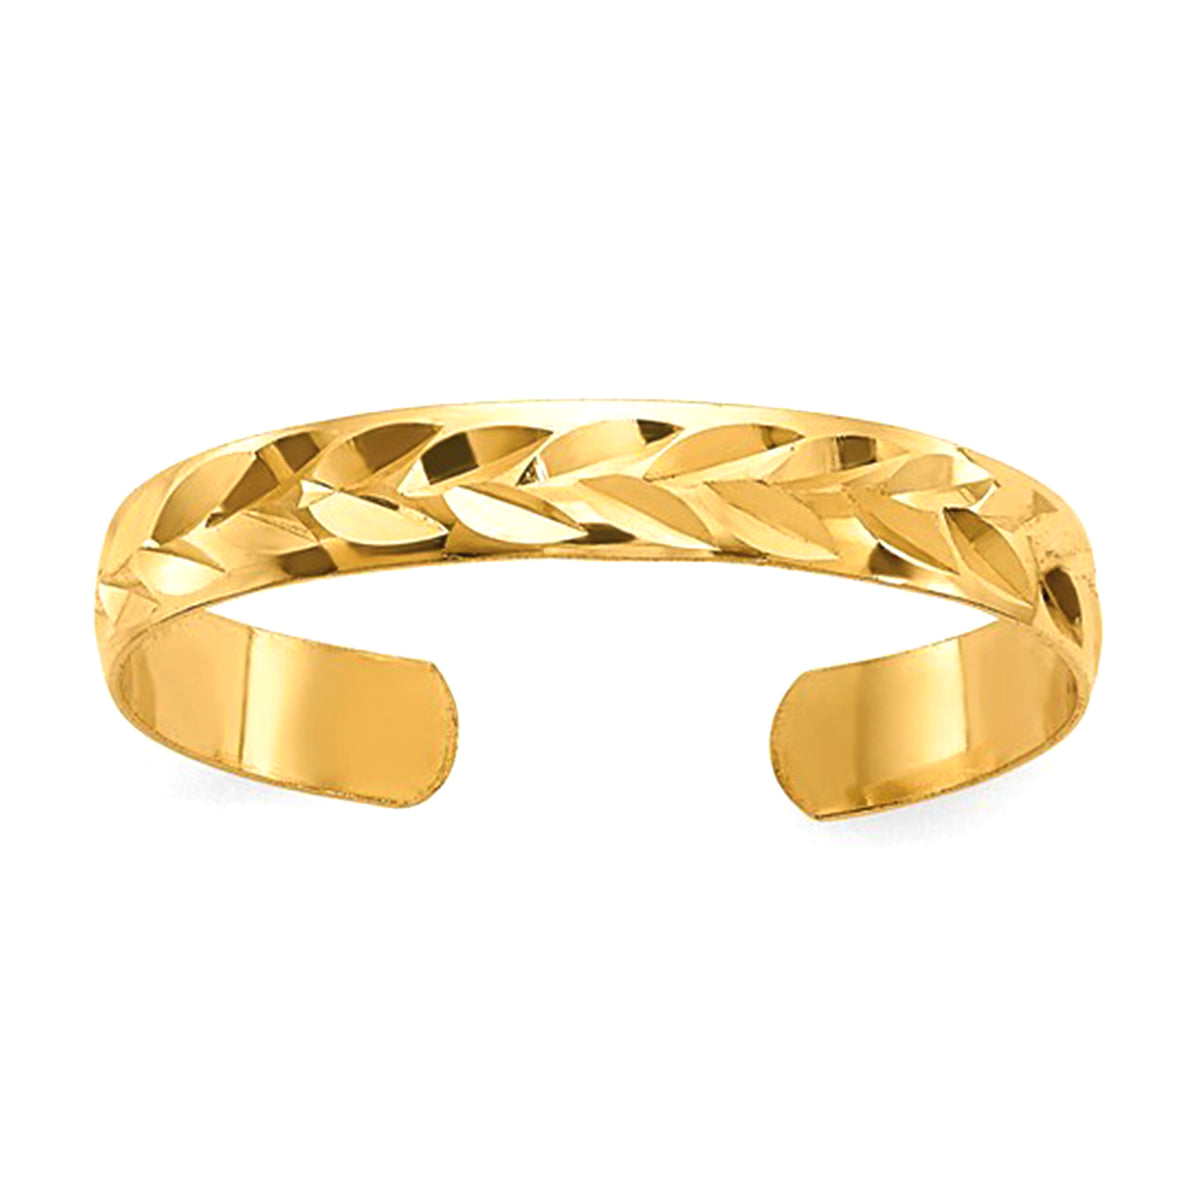 10K gult guld diamantskuren tåring för damer fina designersmycken för män och kvinnor